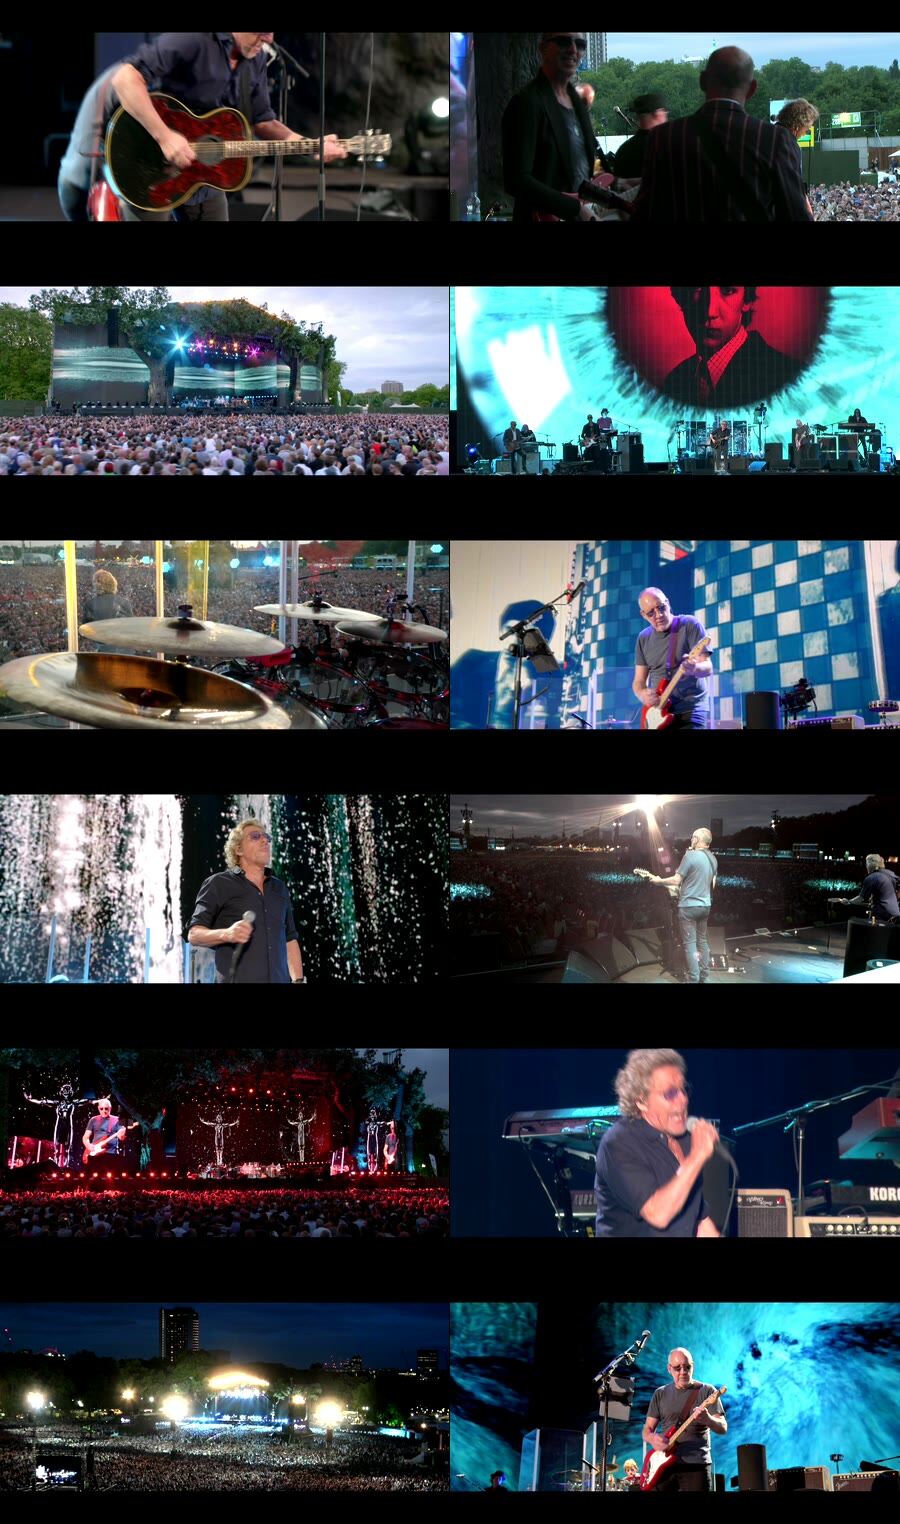 The Who 乐队 – Live in Hyde Park 海德公园演唱会 (2015) 1080P蓝光原盘 [BDMV 33.1G]Blu-ray、Blu-ray、摇滚演唱会、欧美演唱会、蓝光演唱会6